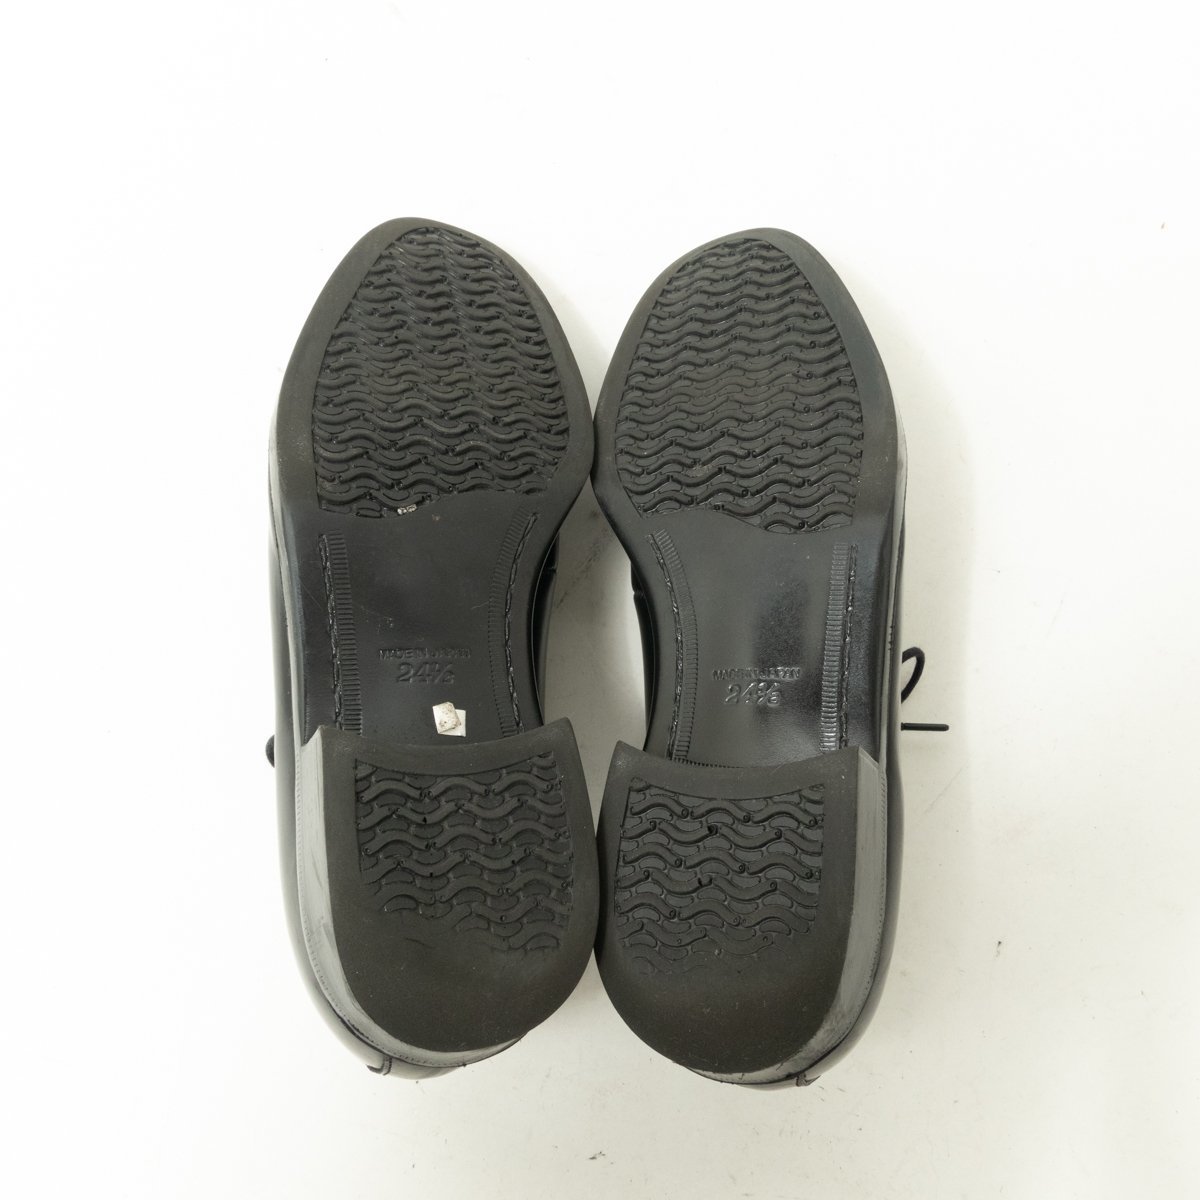 REGAL PROFESSIONAL GEAR プロフェッショナルギア リーガル ビジネスシューズ ブラック 黒 24.5cm レザー 日本製 メンズ シンプル 紳士靴_画像8